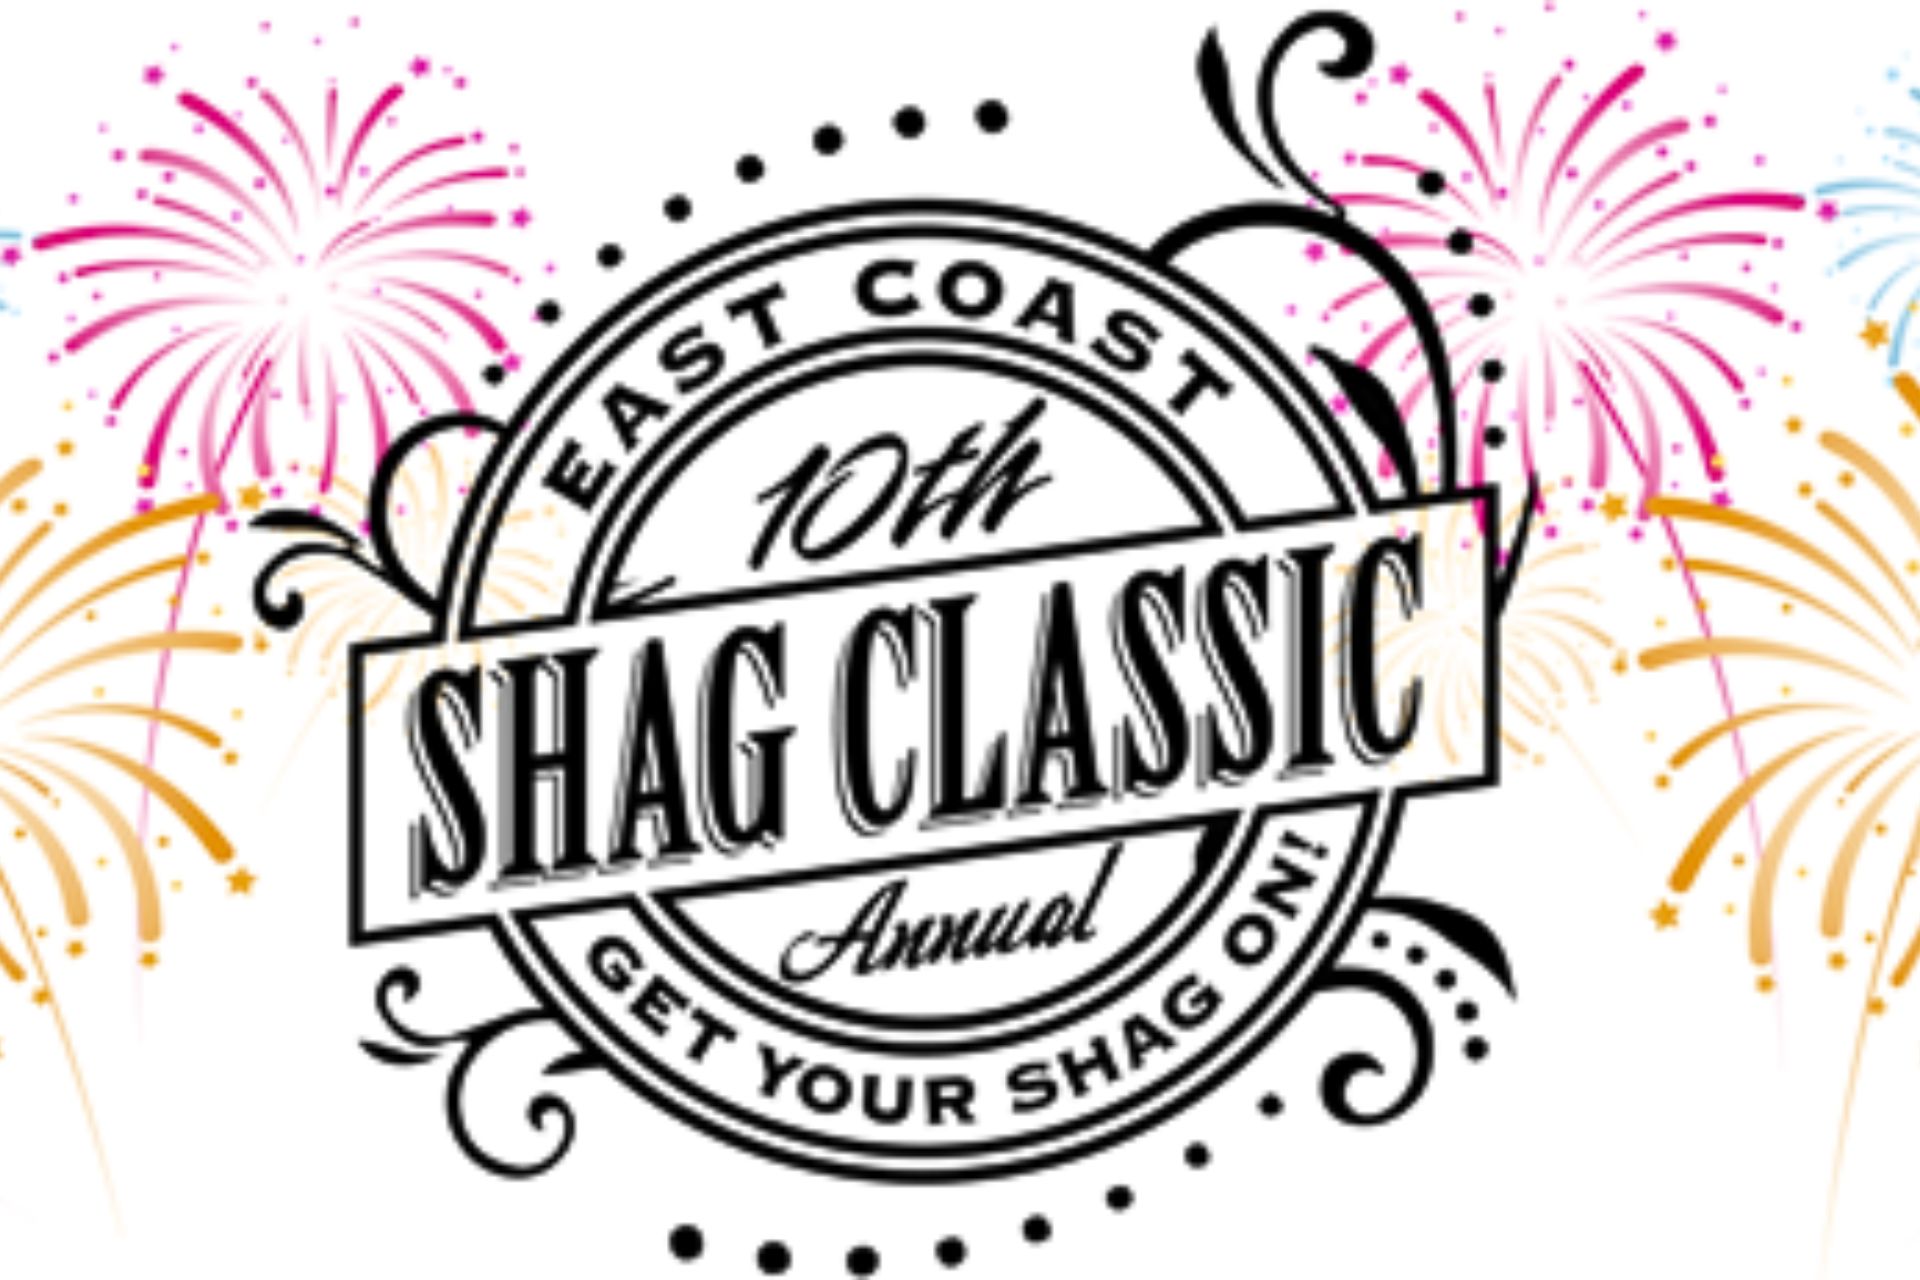 East Coast Shag Classic